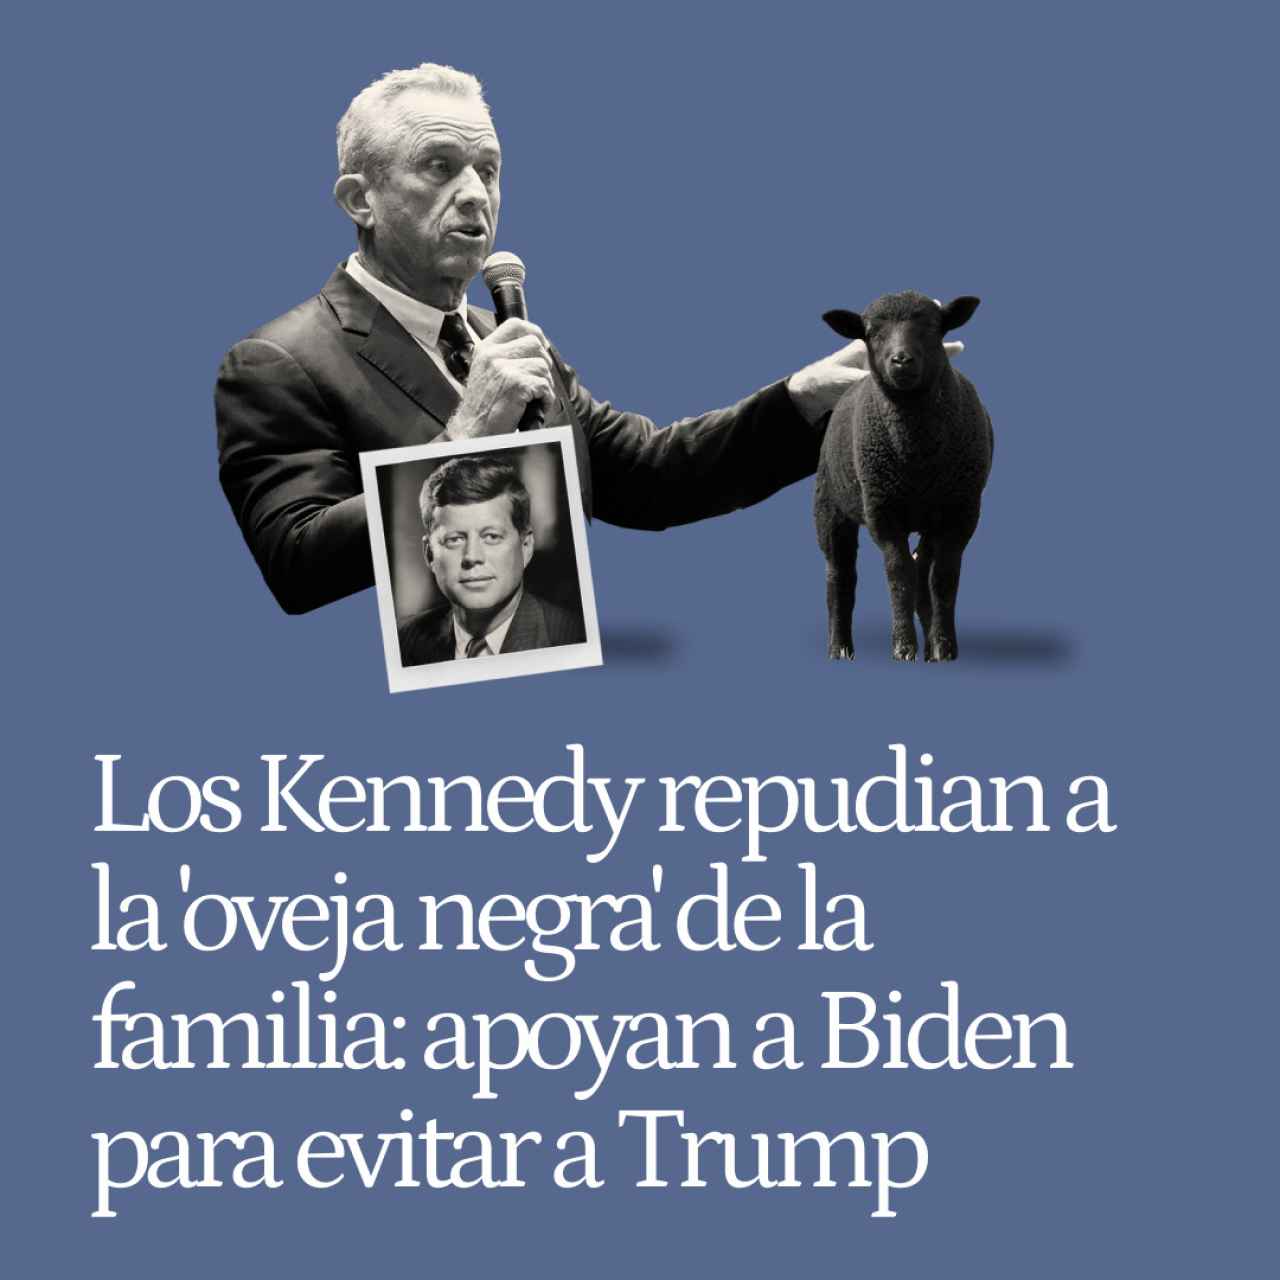 Los Kennedy repudian a la 'oveja negra' de la familia: apoyan a Biden para evitar la reelección de Trump